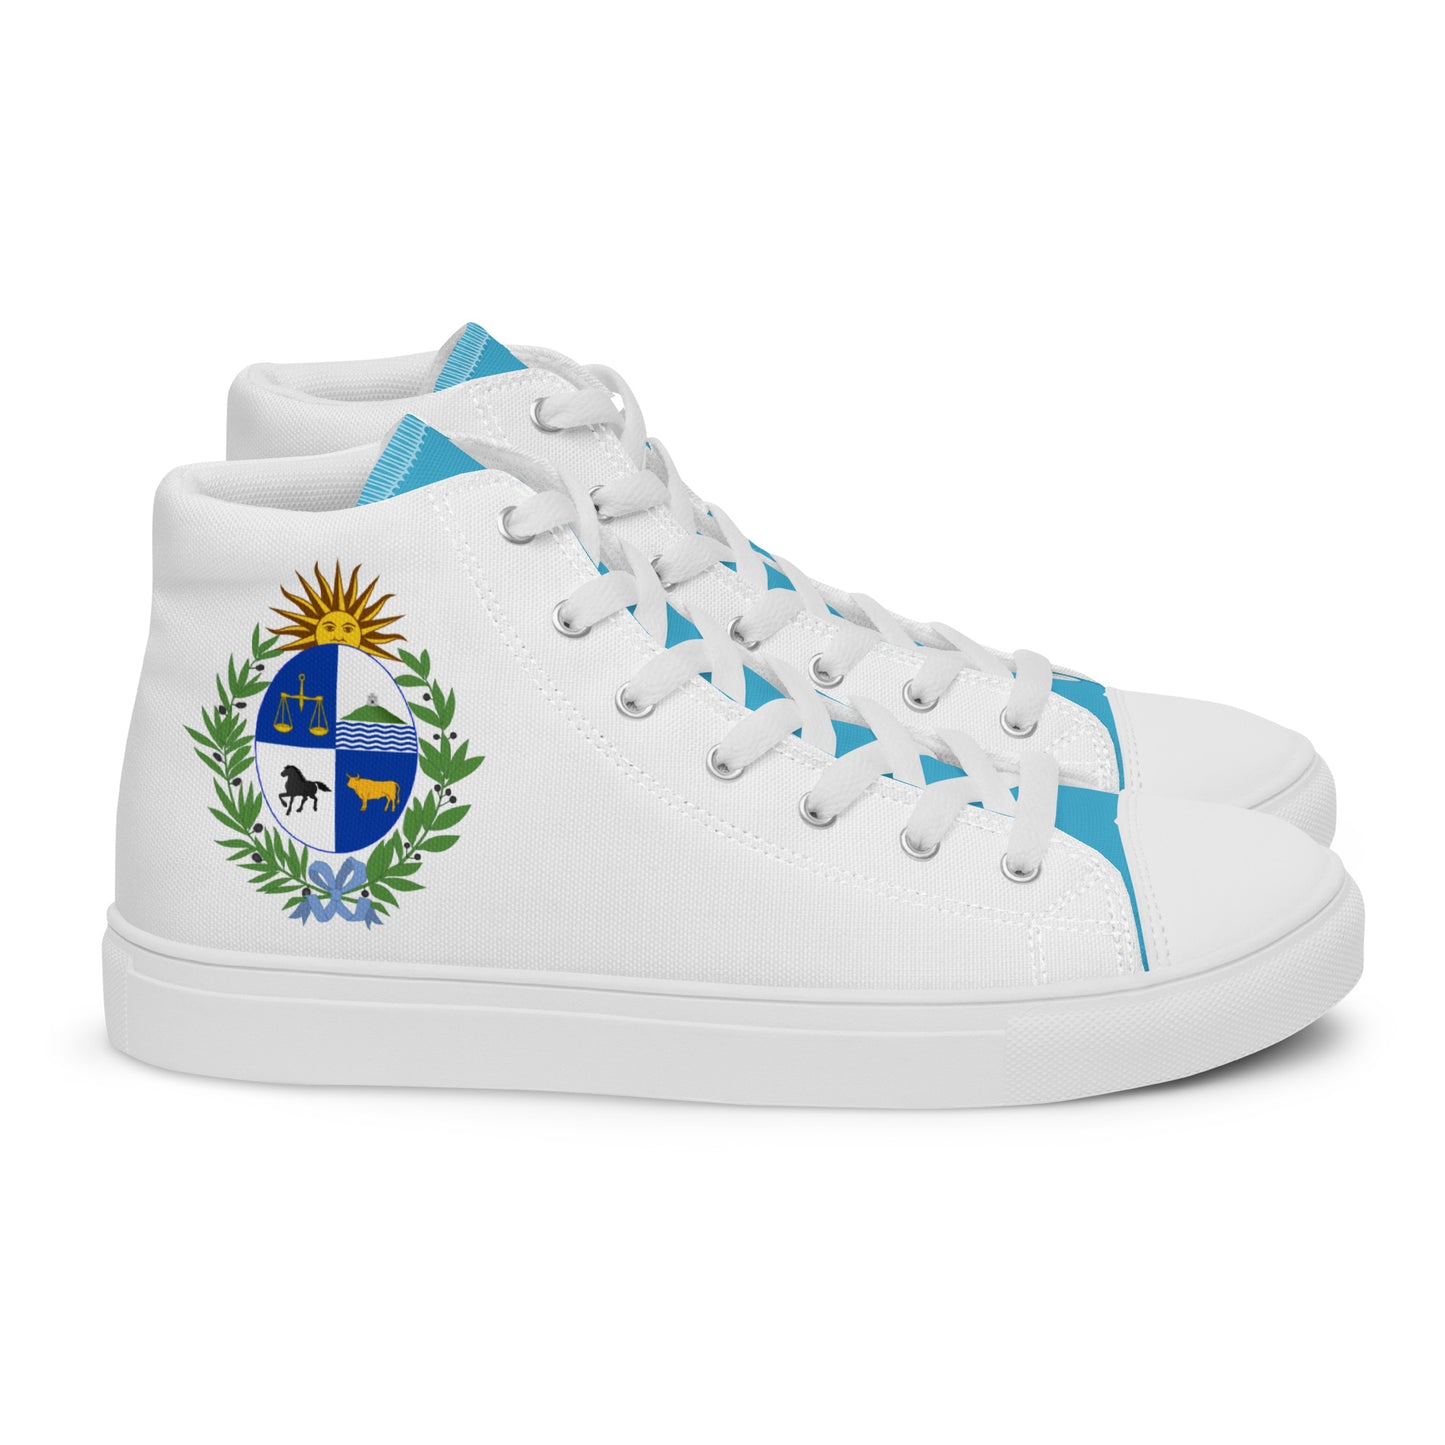 Uruguay - Women - White - High top shoes